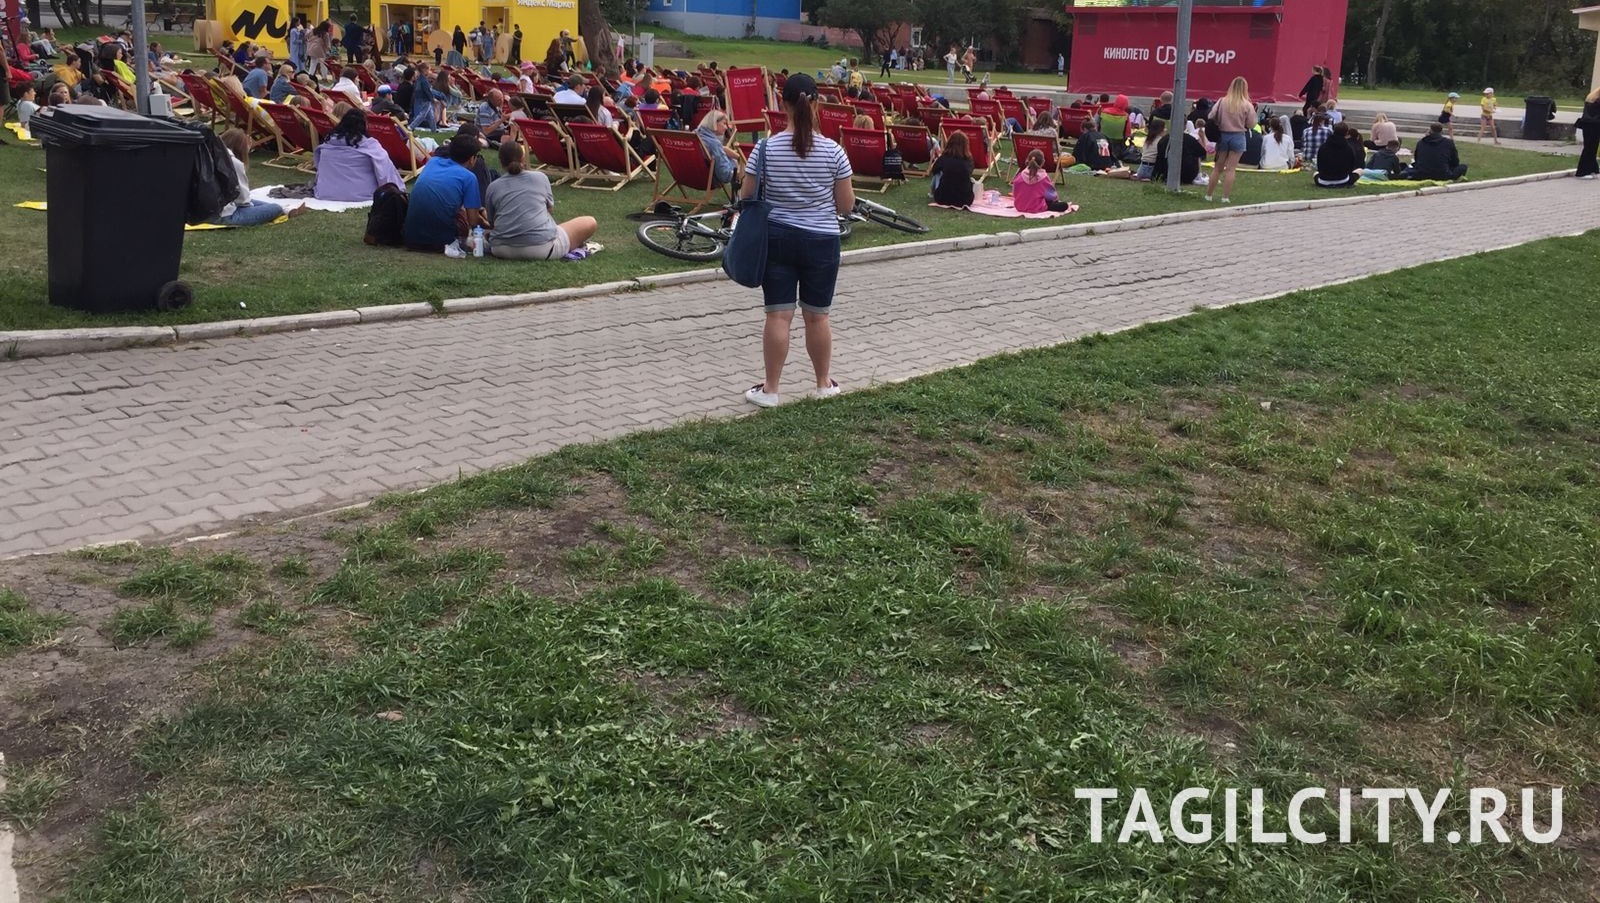 Посетители ЦПКиО в Екатеринбурге массово травмируются из-за ямы на дорожке